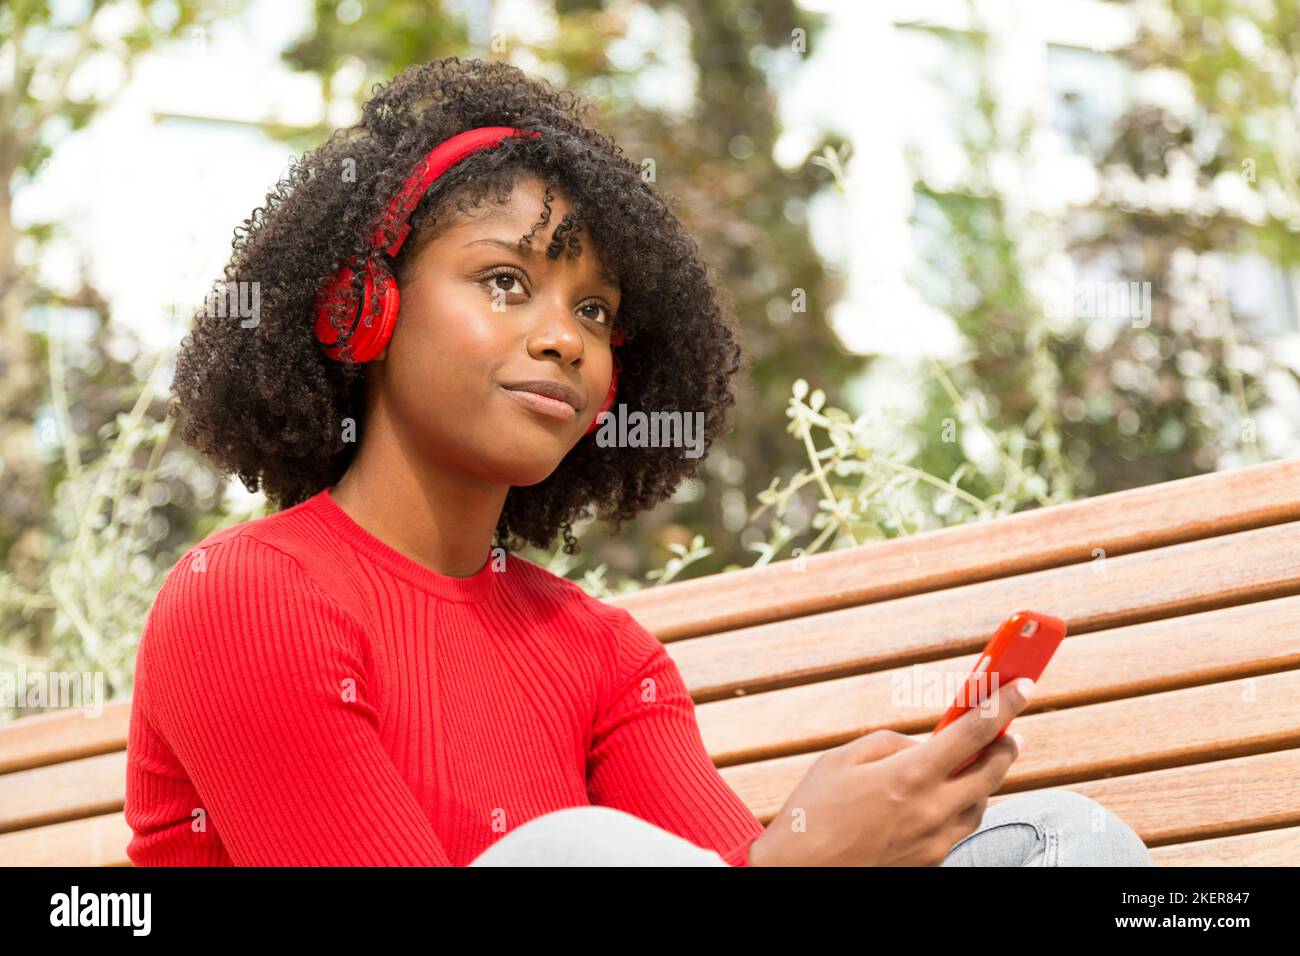 Junge Frau, die auf einer Bank sitzt und Musik mit Kopfhörern hört, mit einem Ausdruck von Selbstbewusstsein im Freien Stockfoto